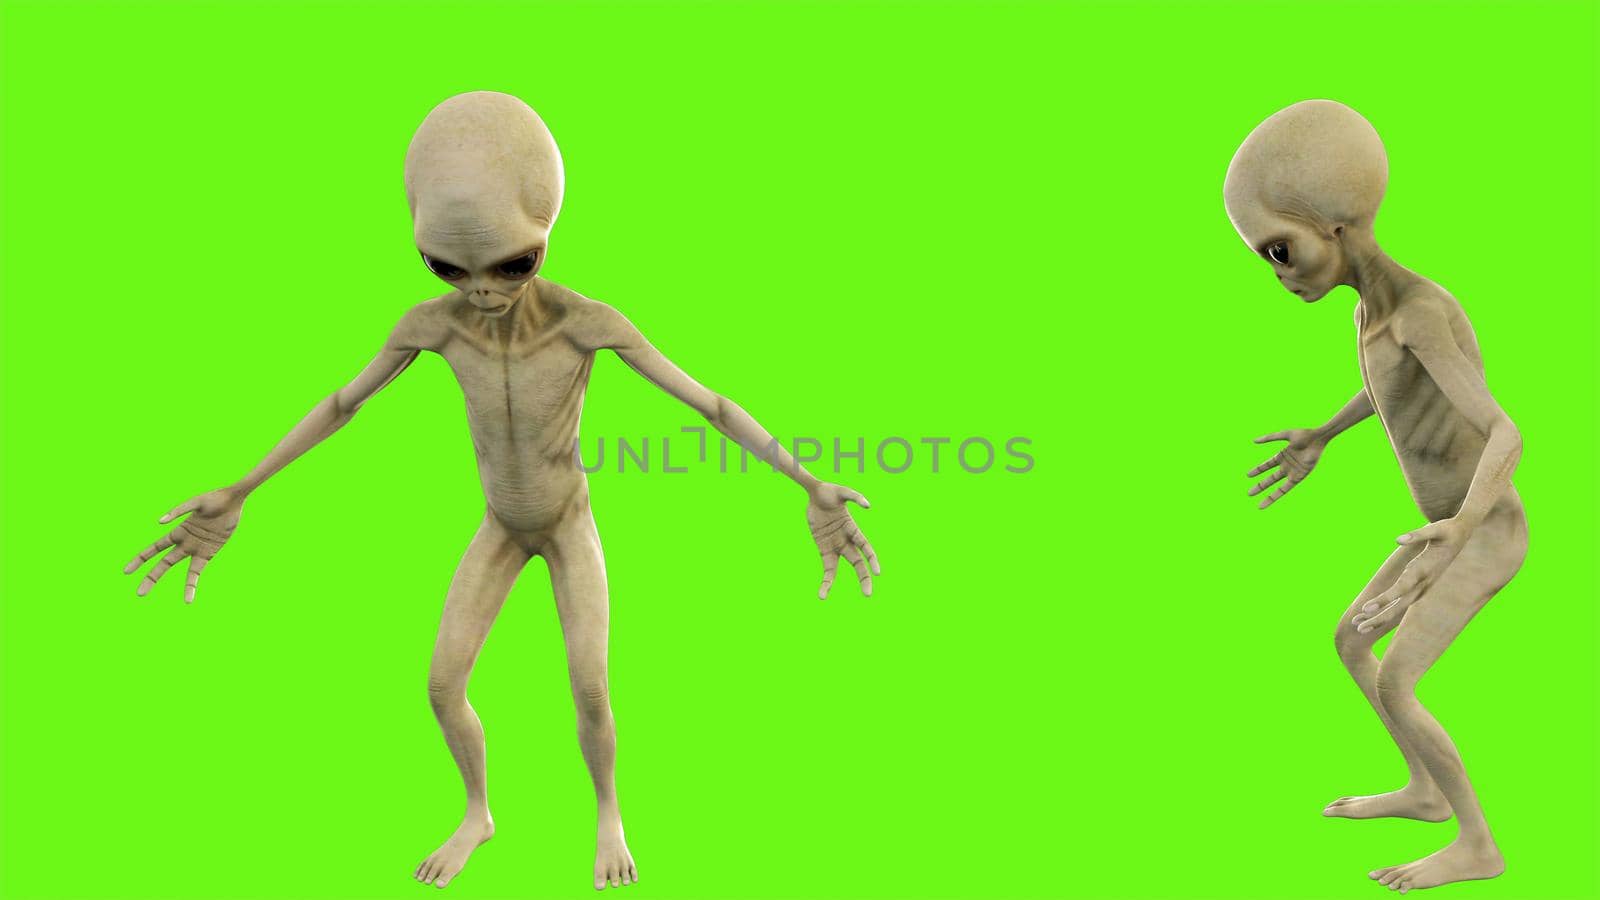 Alien talks on green screen. 3D rendering by designprojects